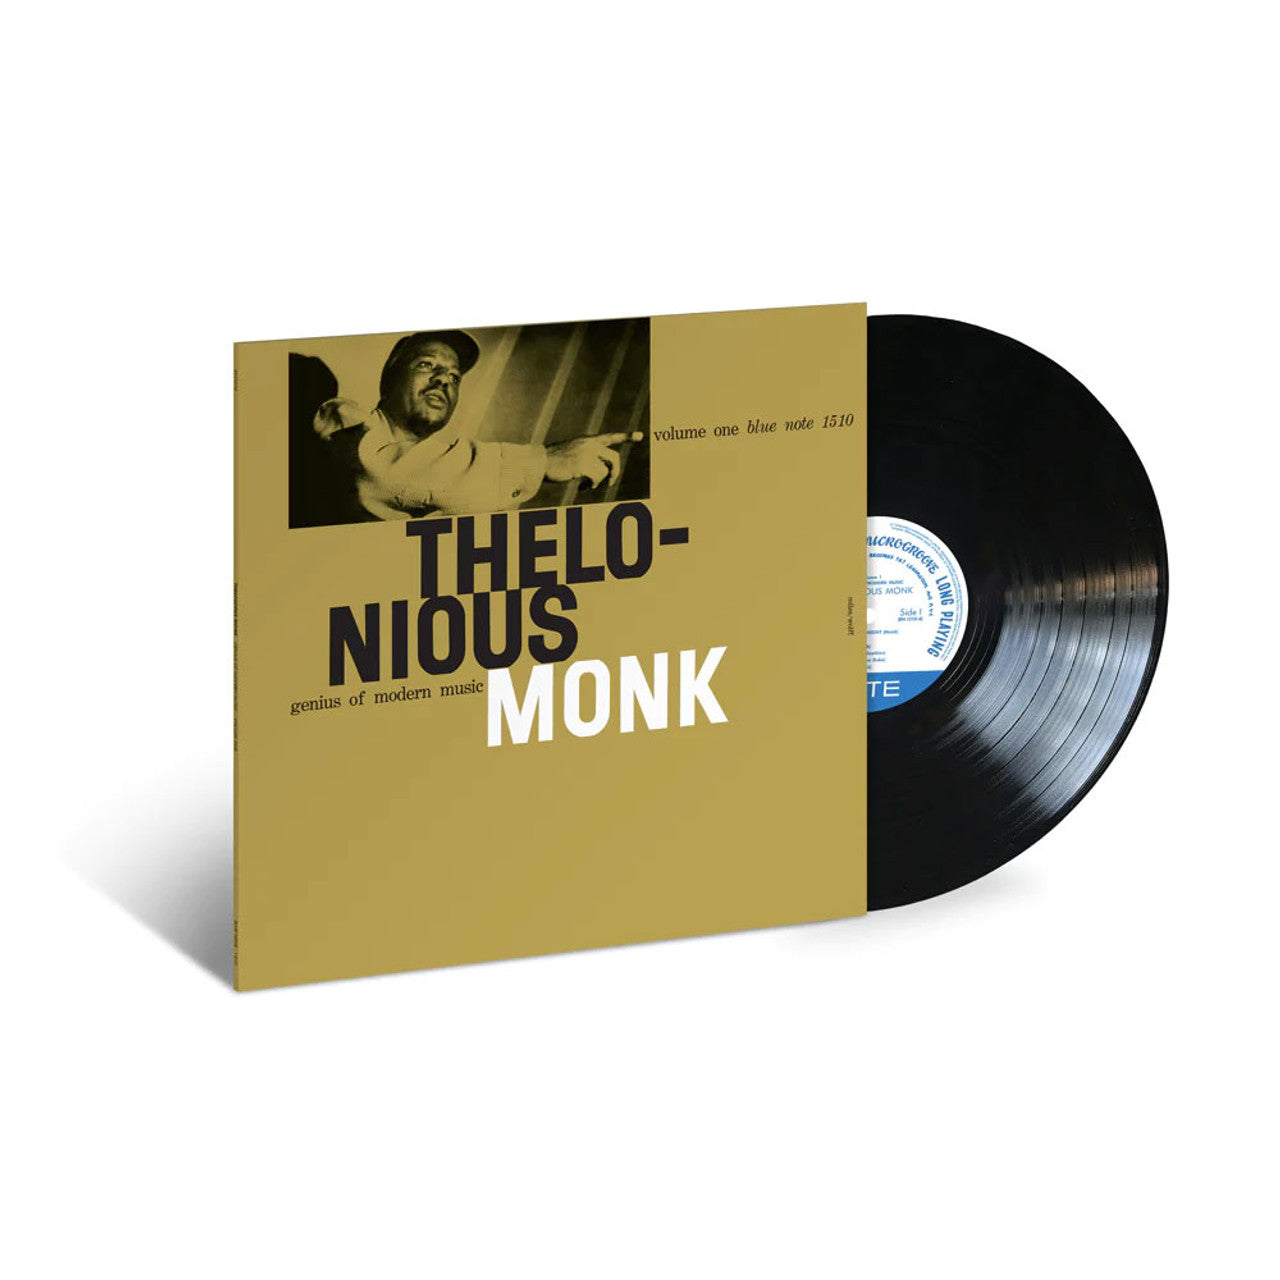 Thelonious Monk - El genio de la música moderna - Blue Note Classic LP 